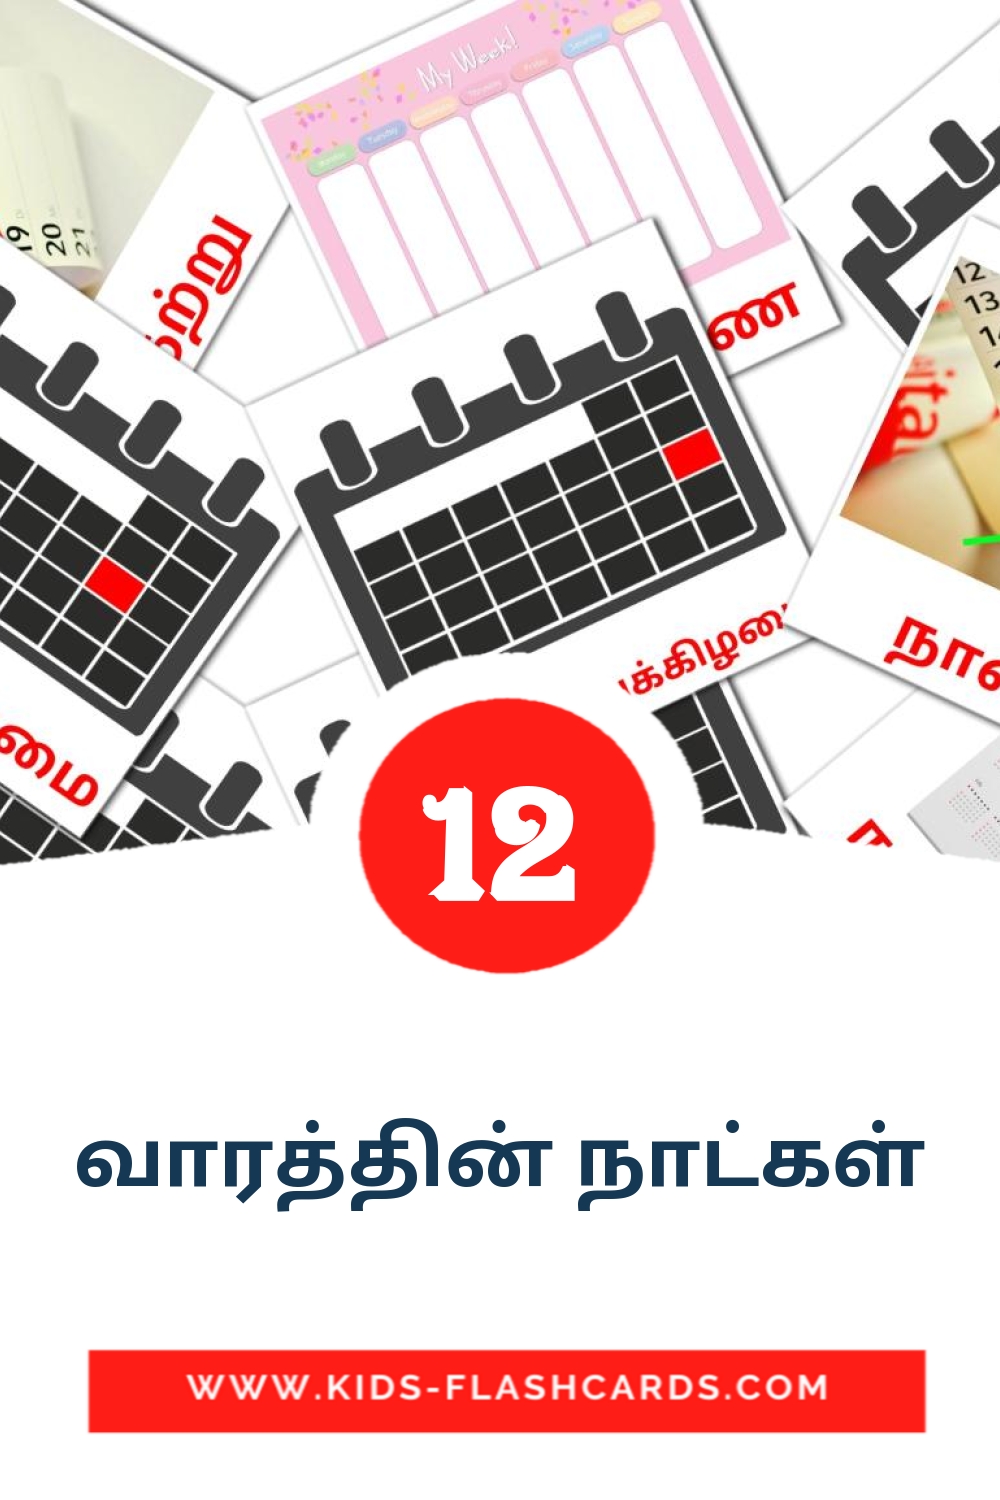 12 Cartões com Imagens de வாரத்தின் நாட்கள் para Jardim de Infância em tamil